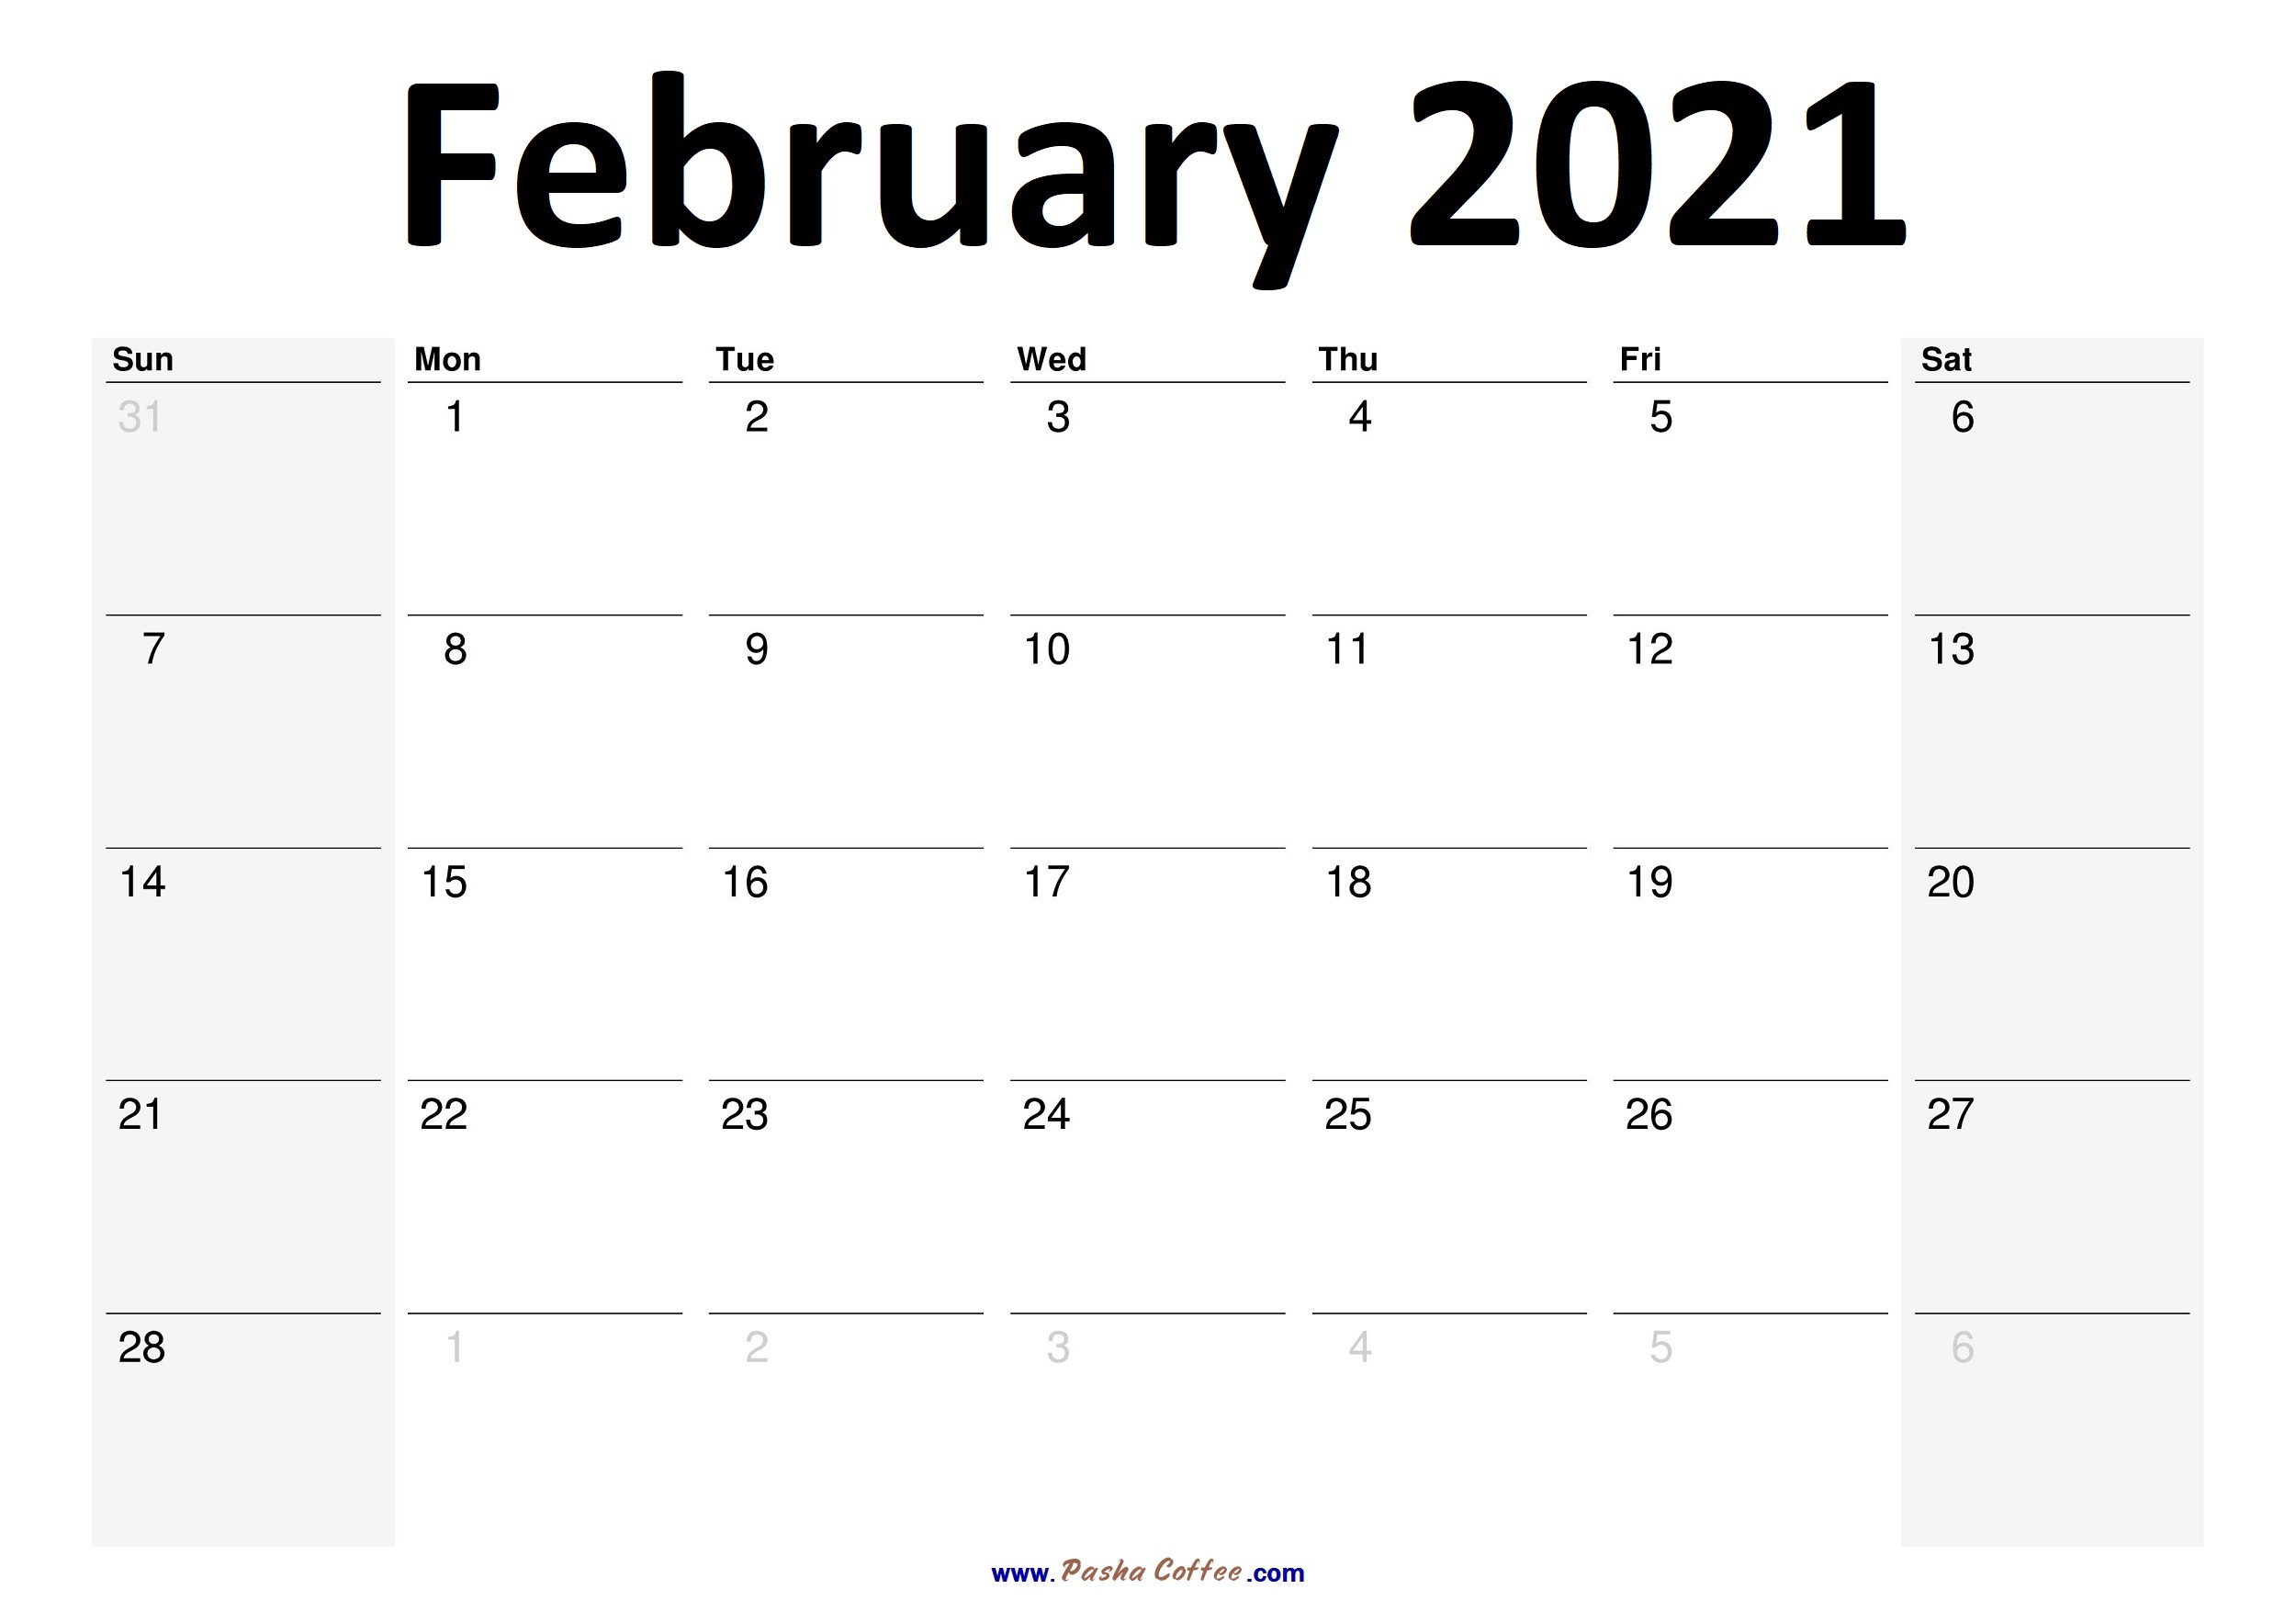 2021-February-Calendar-Planner01